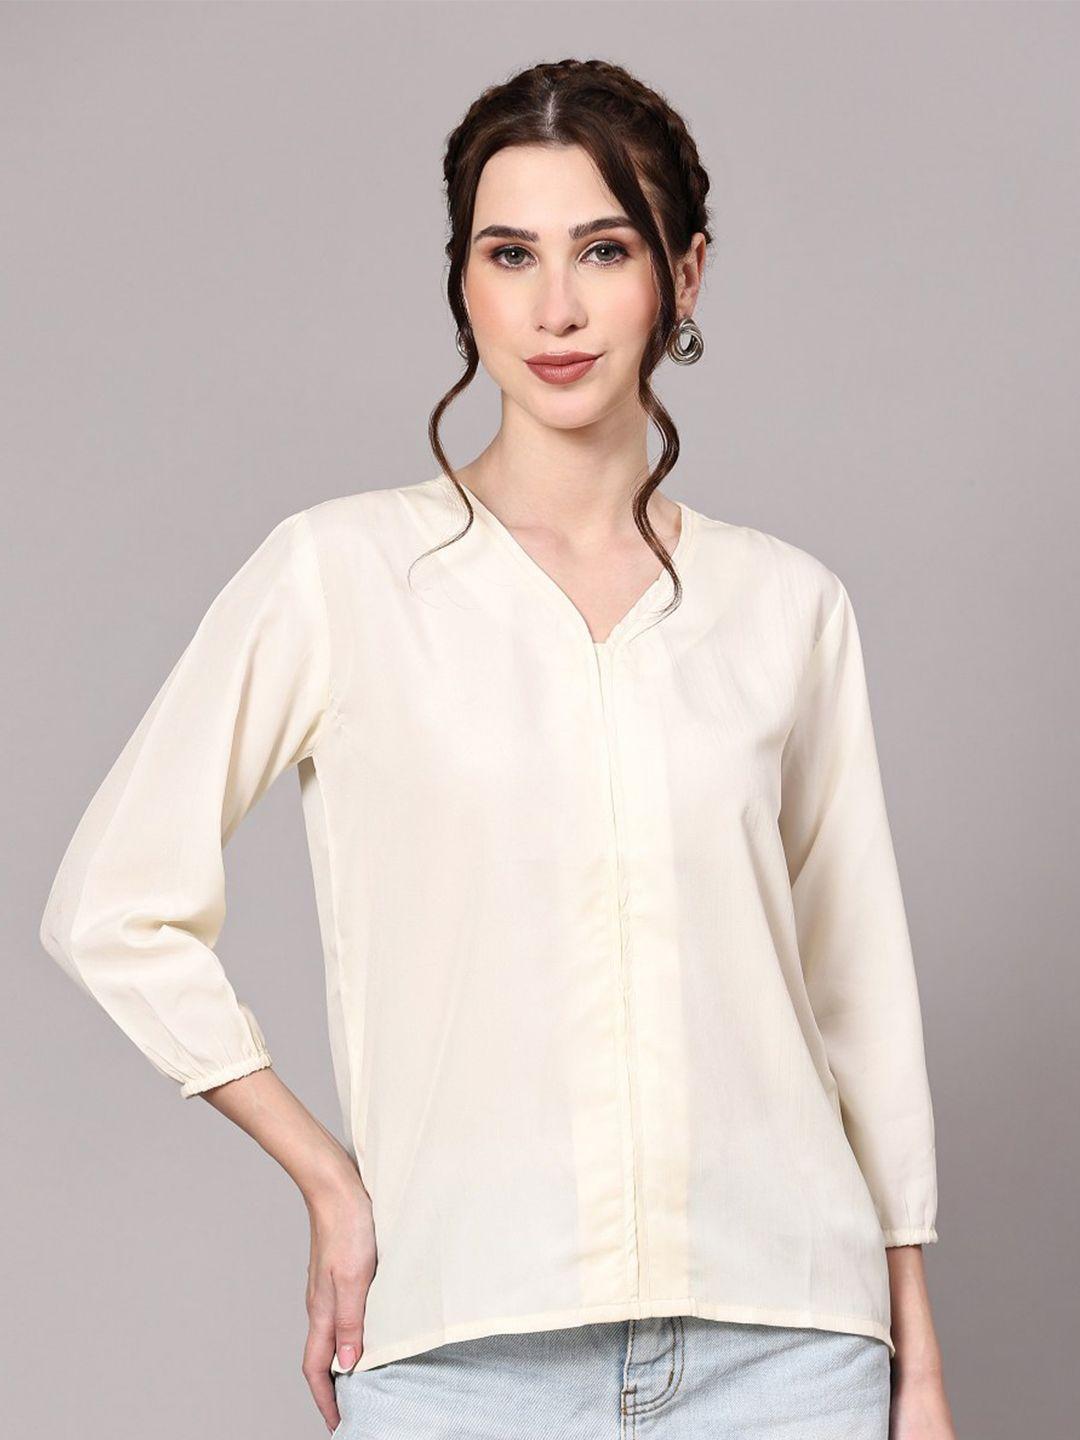 kalini white shirt style top